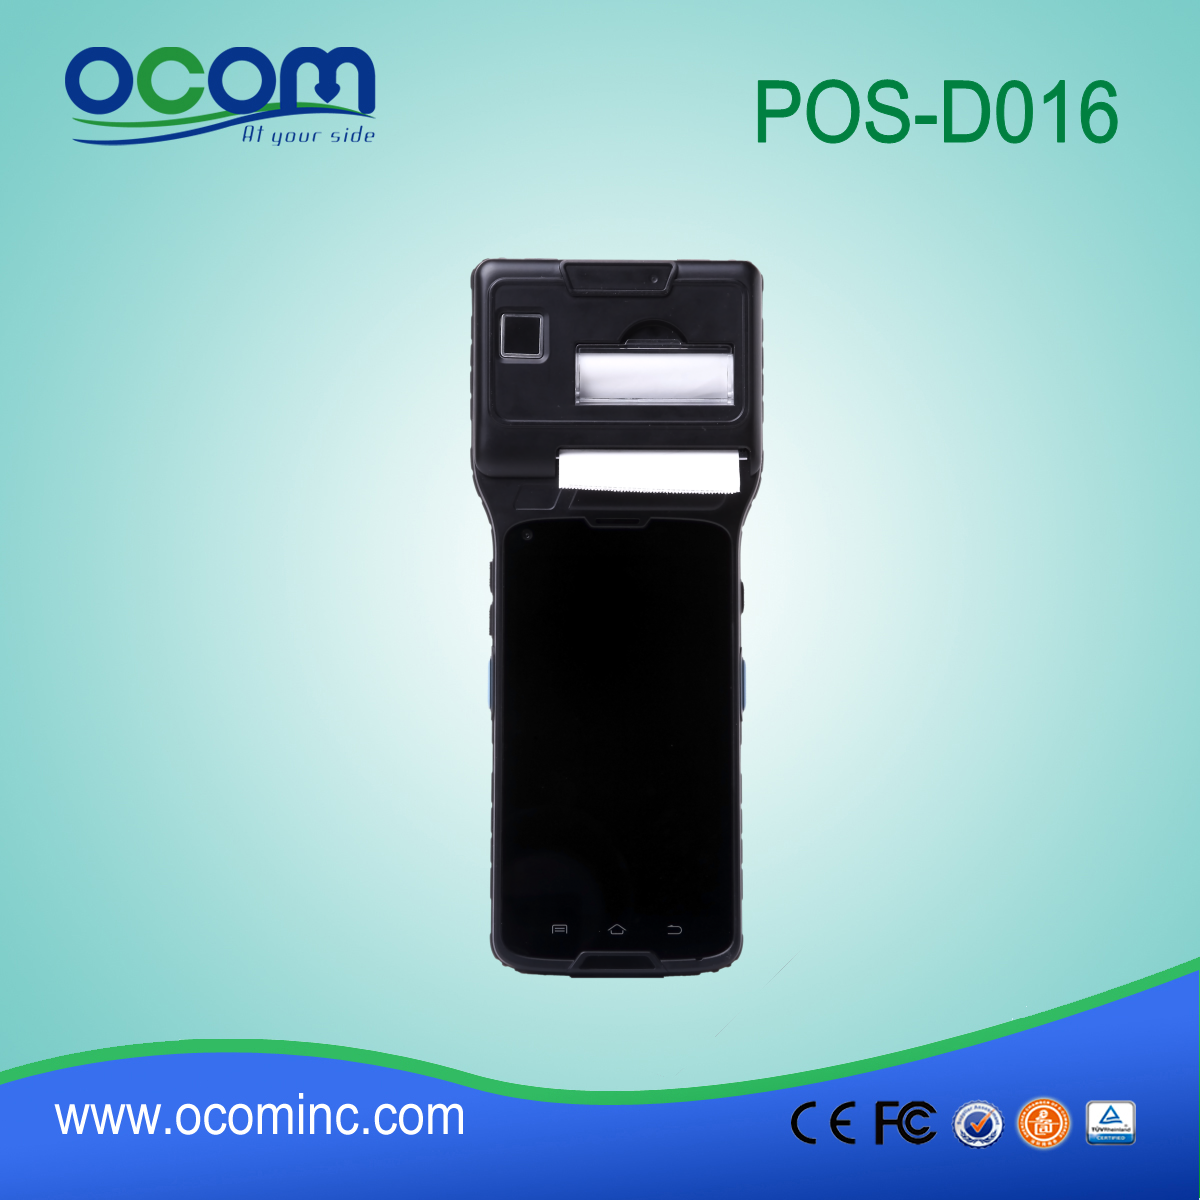 5 '' pantalla táctil del terminal punto de venta con 3G (WCDMA) + WIFI + BT + GPS + cámara + impresora térmica + NFC (OCBS-D016)